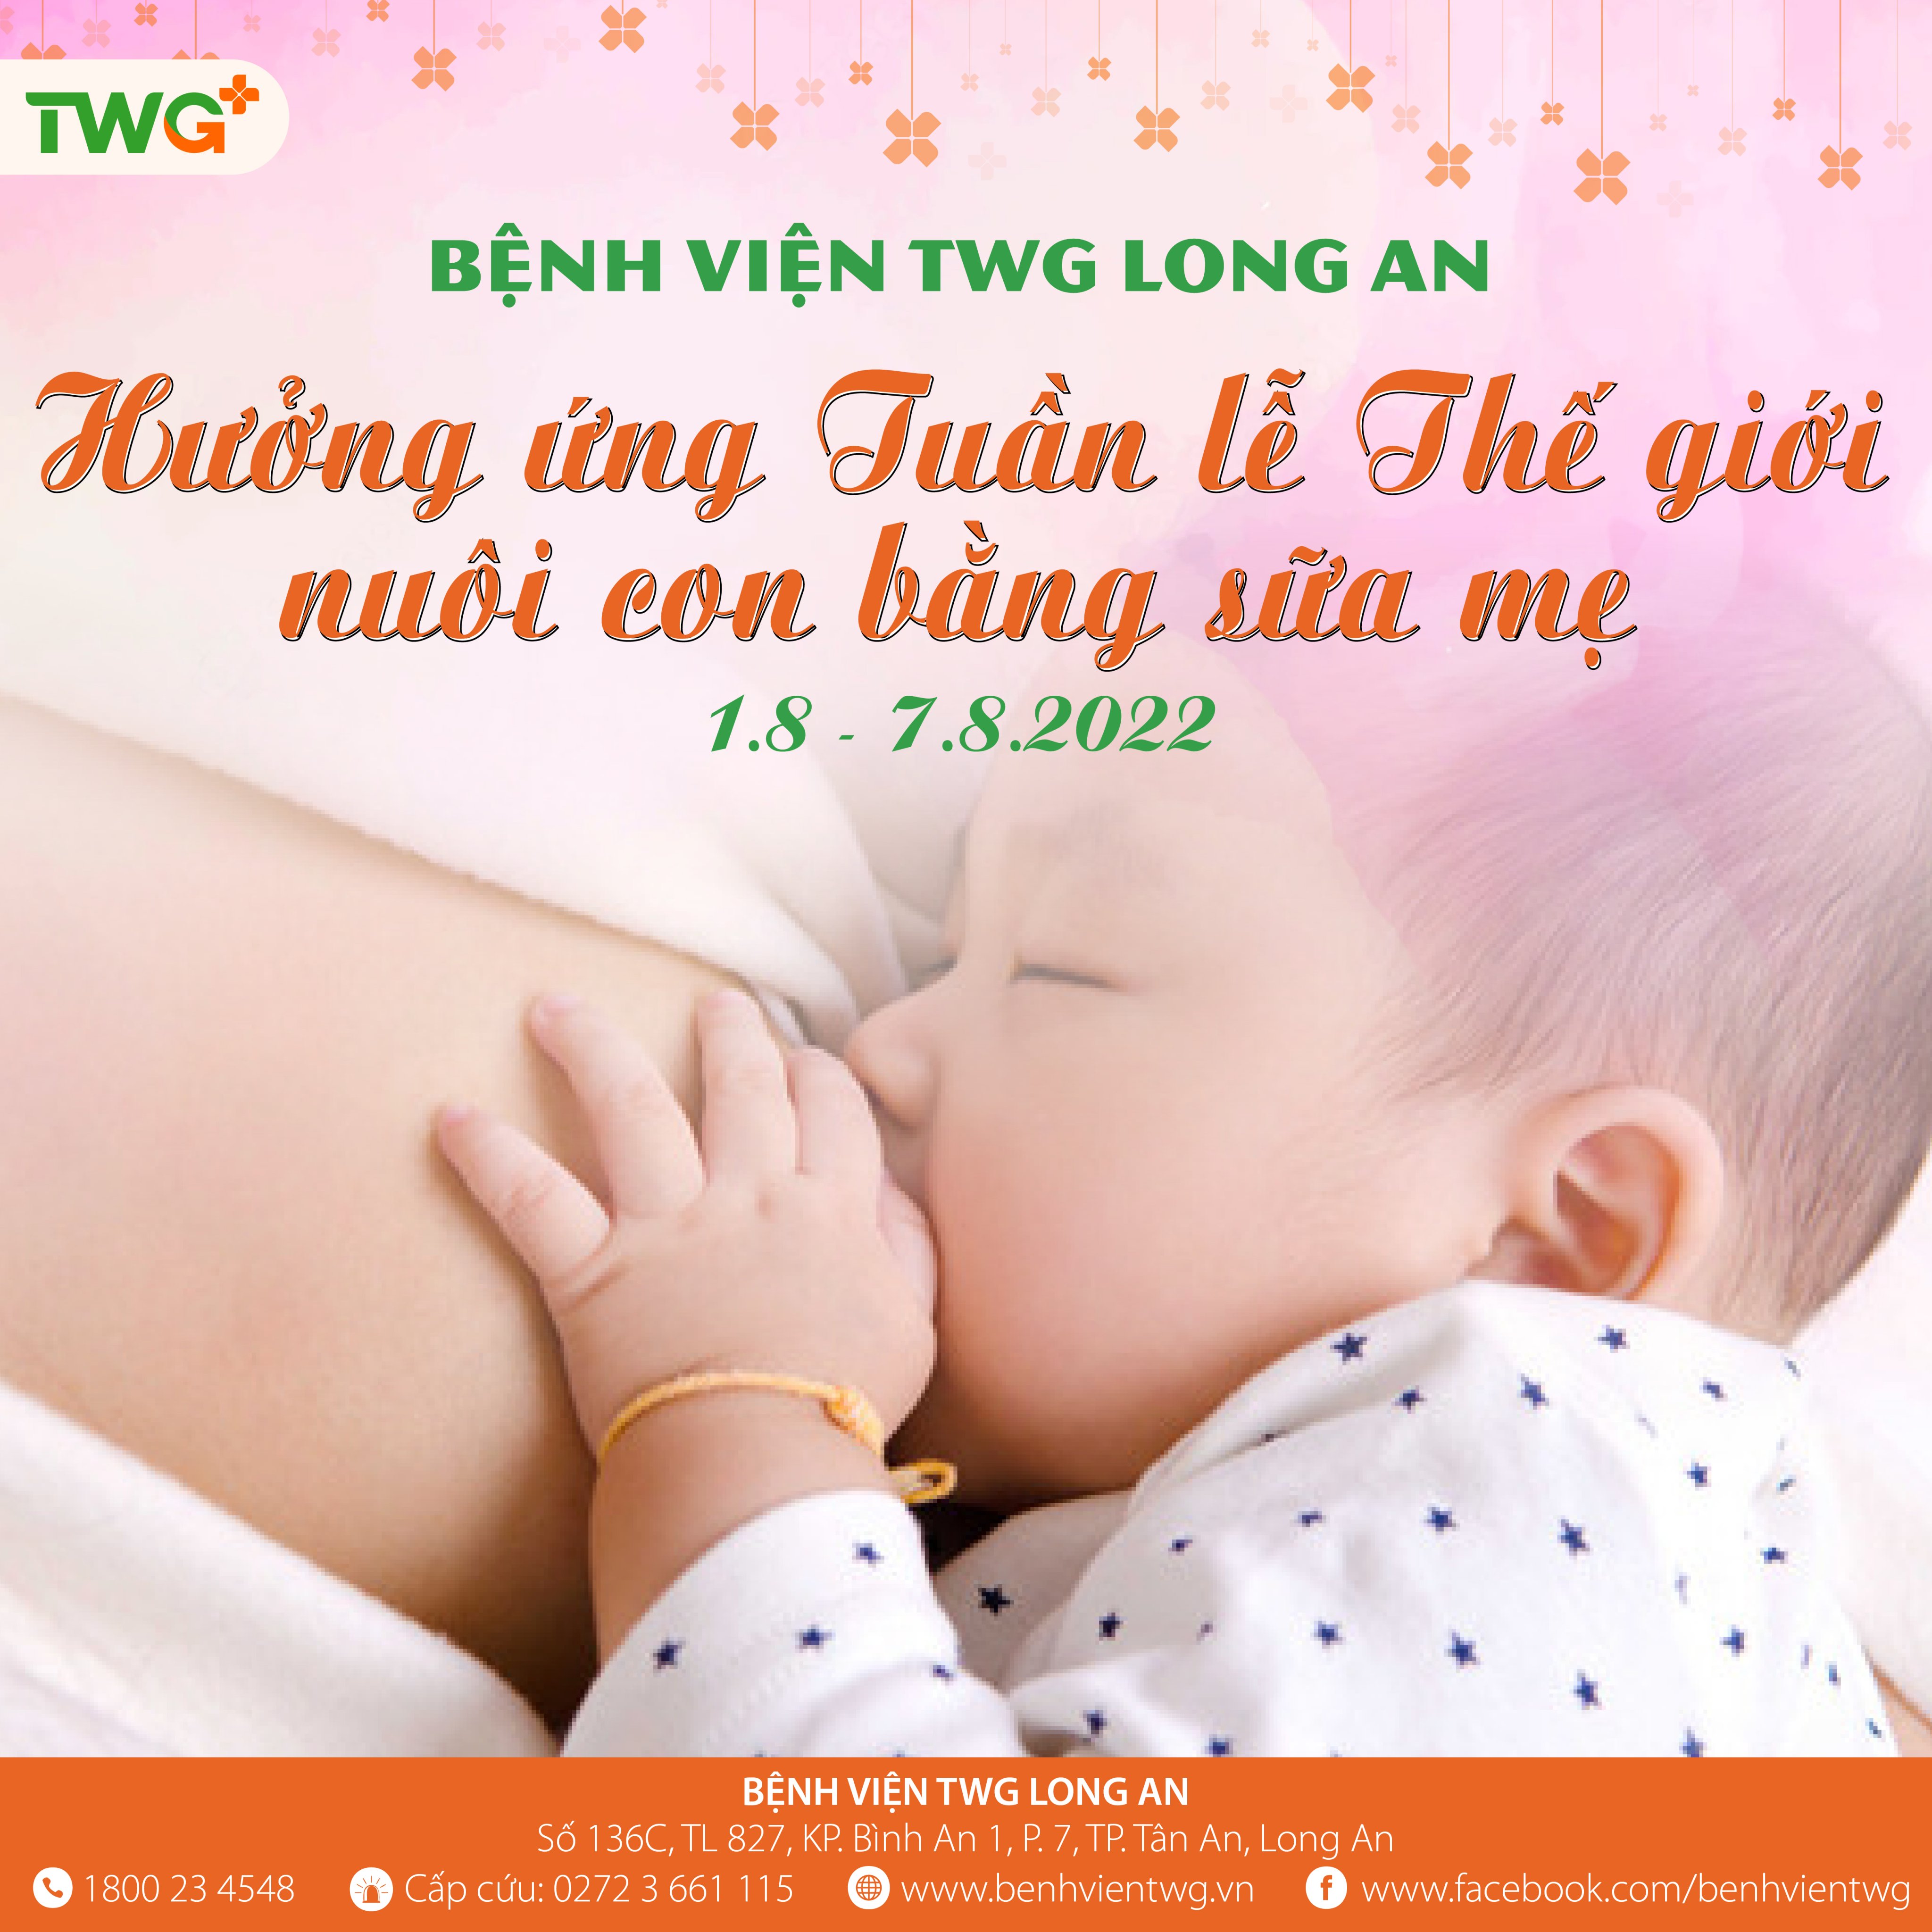 Bệnh viện TWG Long An - Đa khoa hưởng ứng Tuần lễ Thế giới nuôi con bằng sữa mẹ năm 2022